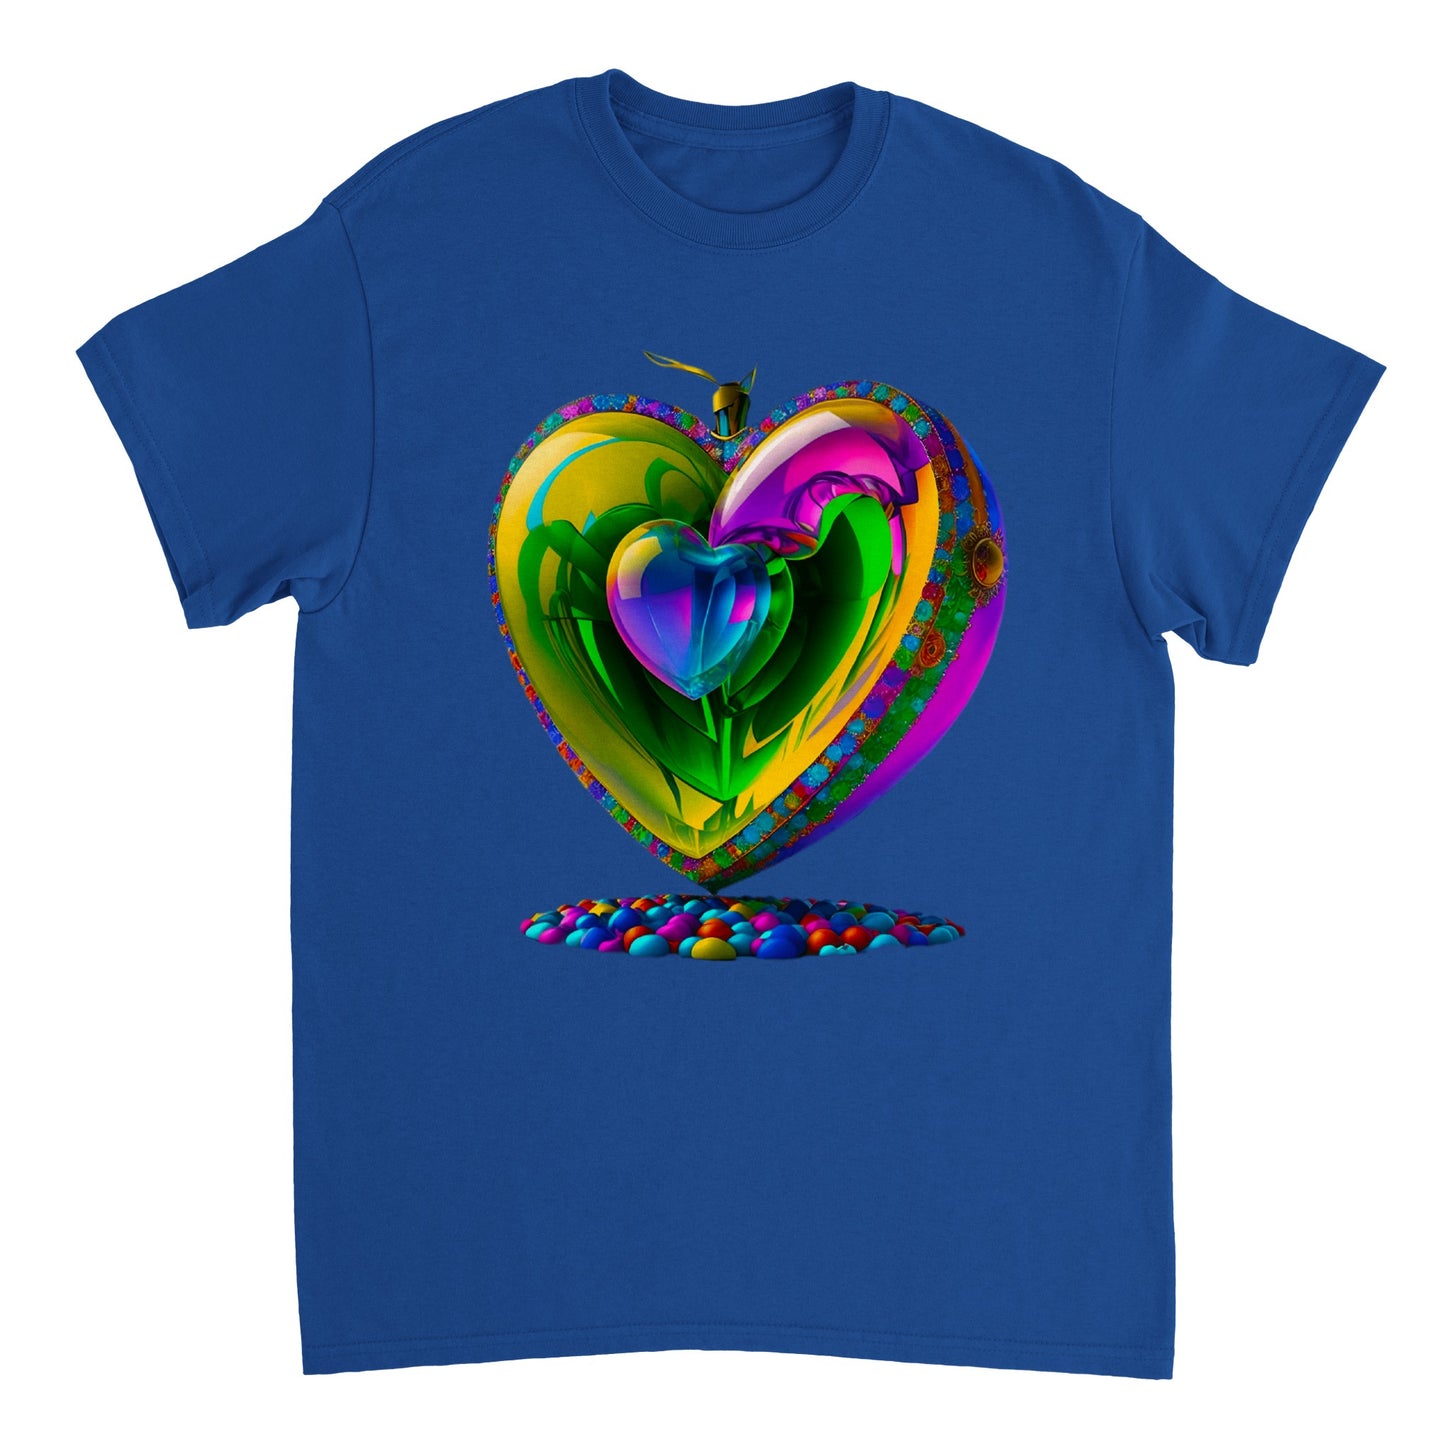 Love Heart - Heavyweight Unisex Crewneck T-shirt 55